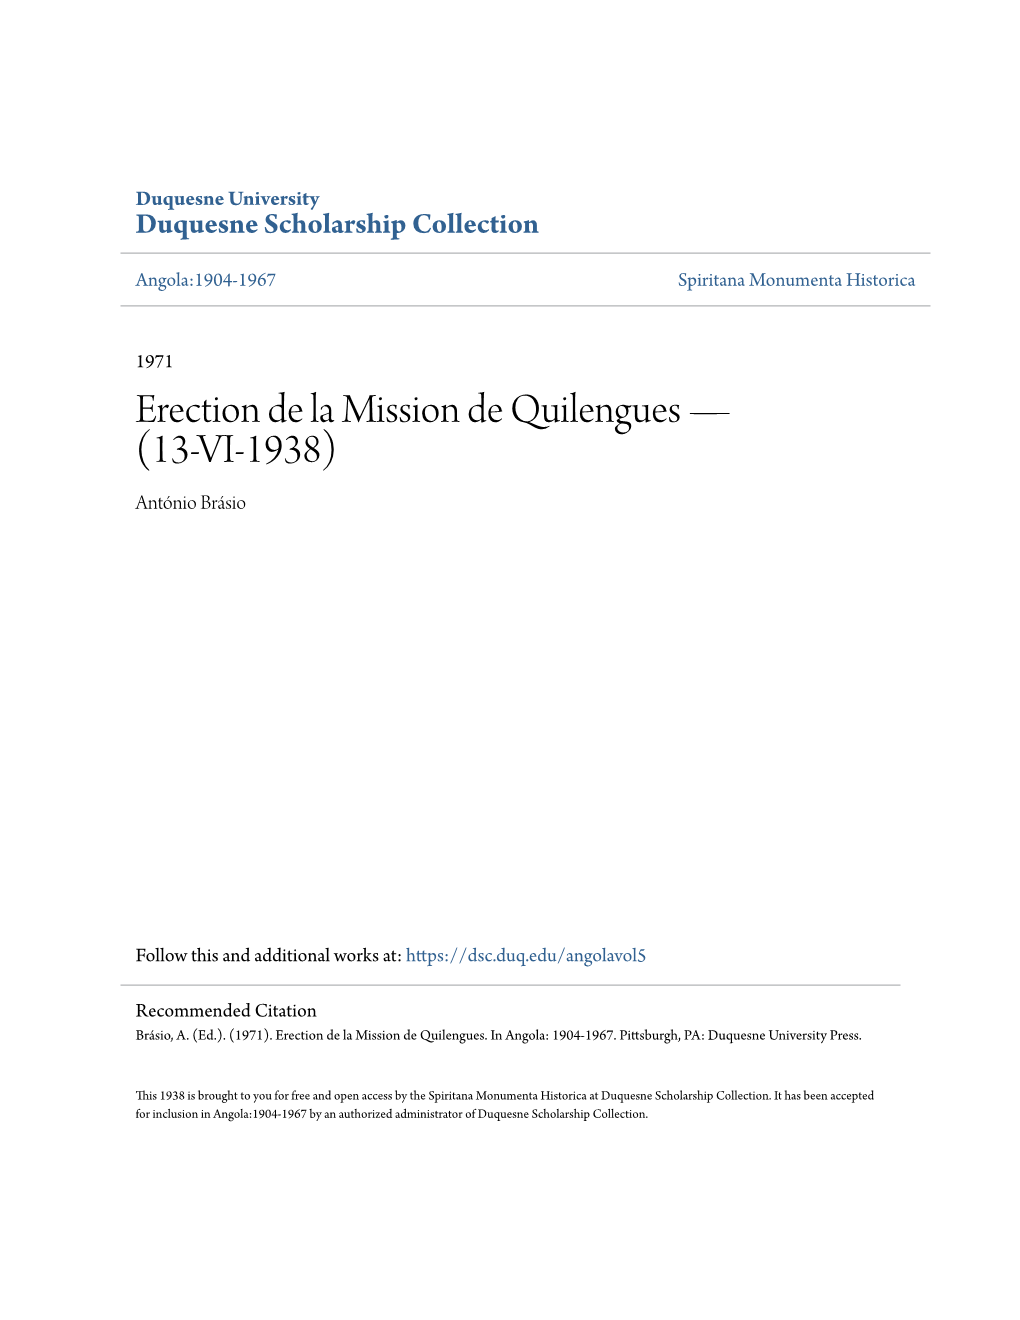 Erection De La Mission De Quilengues Â•Fl (13-VI-1938)